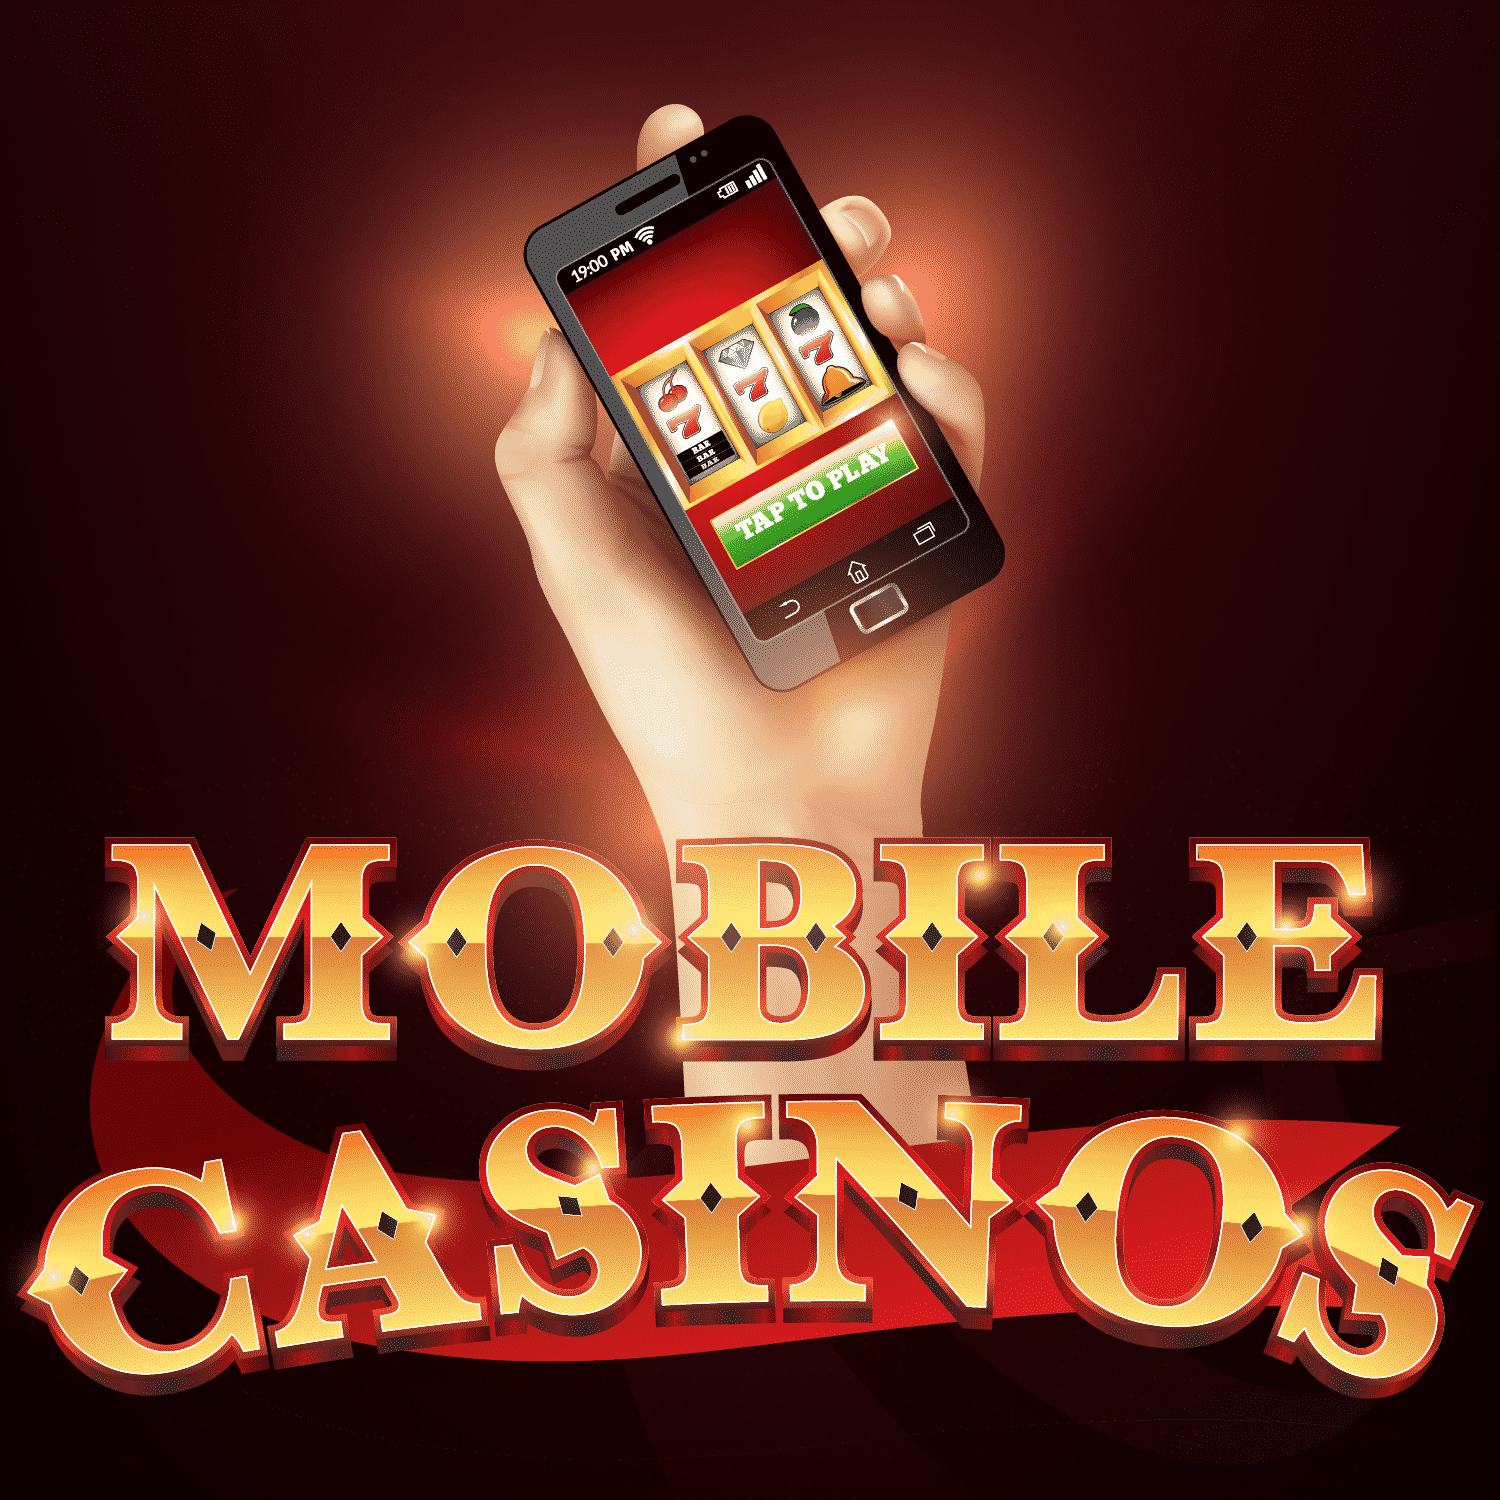 Mobo Casino